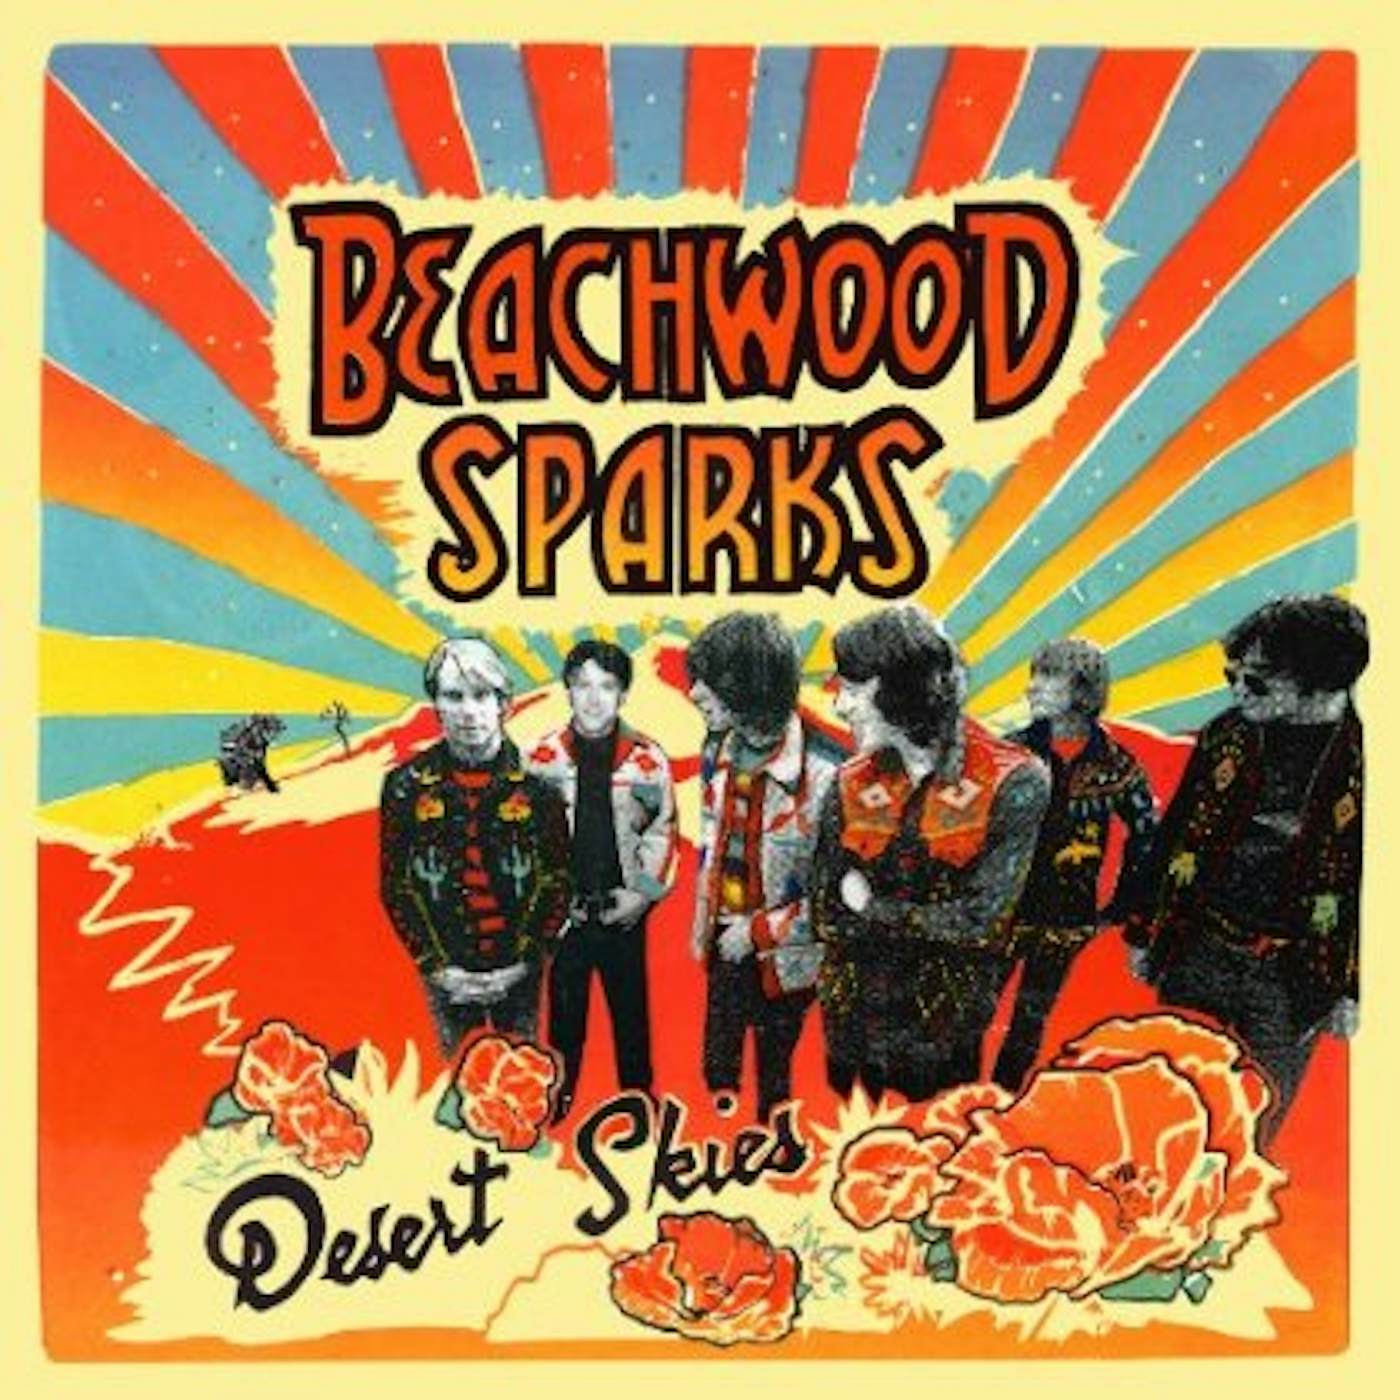 Beachwood Sparks DESERT SKIES CD